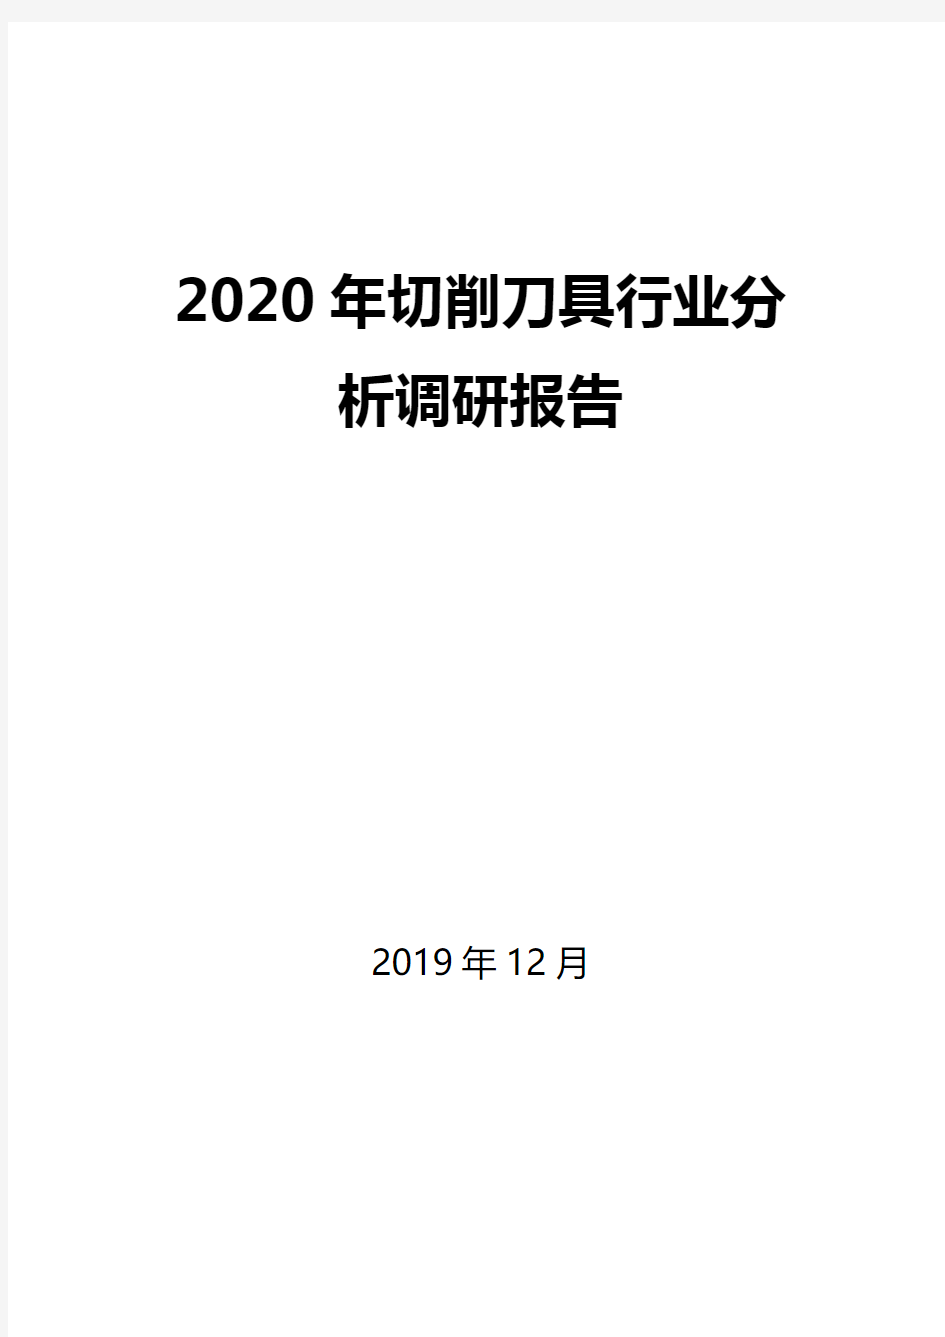 2020年切削刀具行业分析调研报告